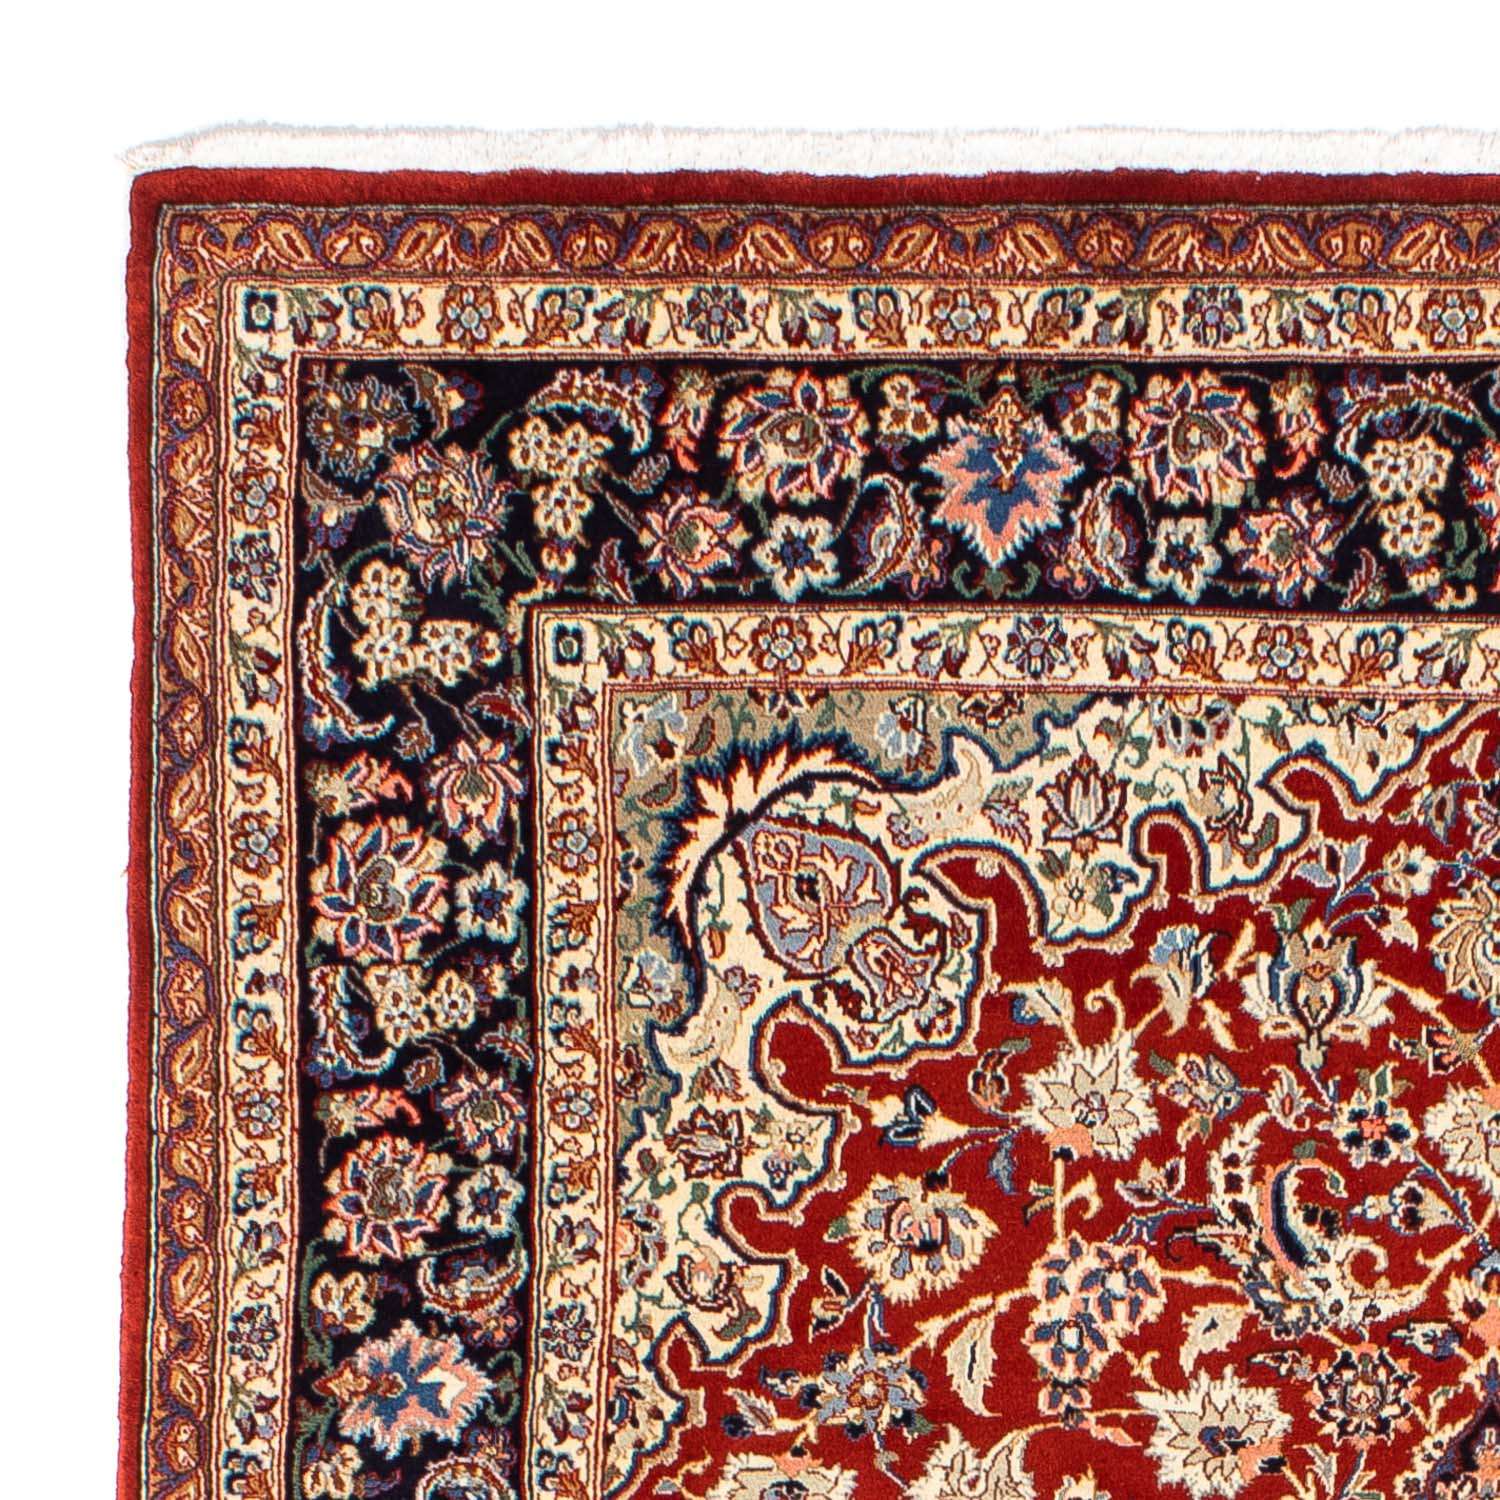 Tapis persan - Royal - 295 x 200 cm - rouge foncé